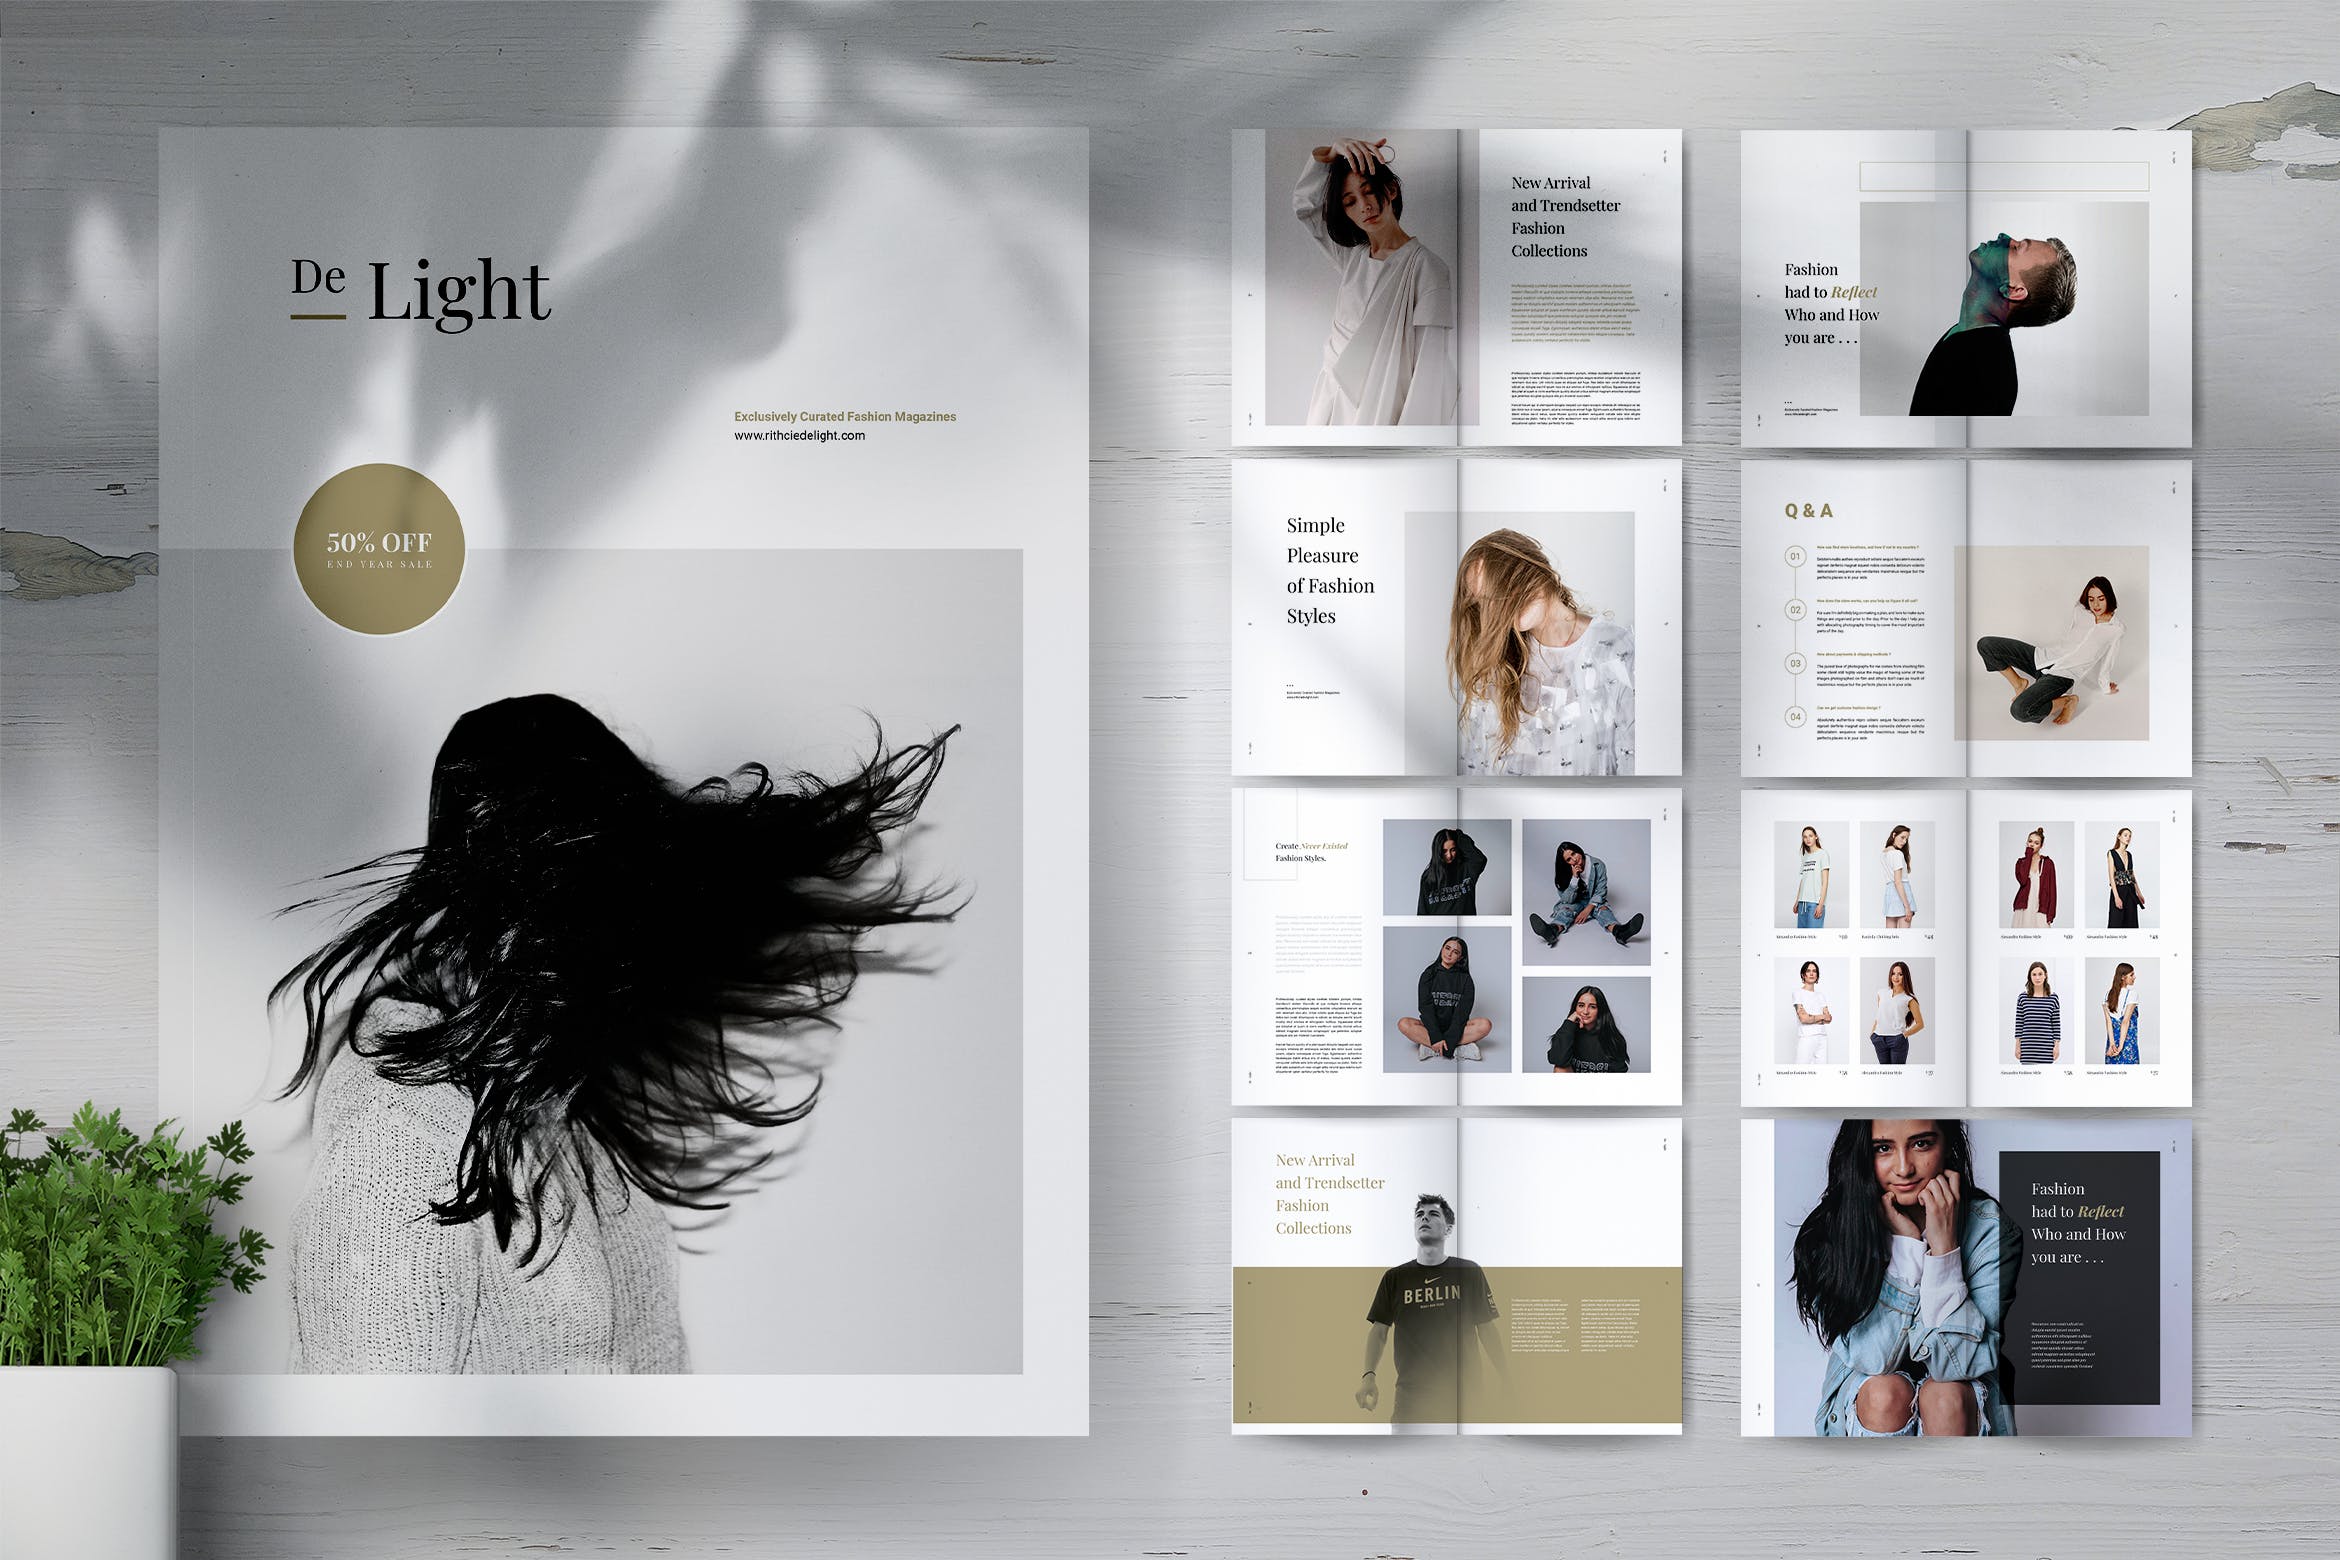 时尚服装品牌产品目录/画册设计模板 DE LIGHT Minimalist Fashion Magazine插图